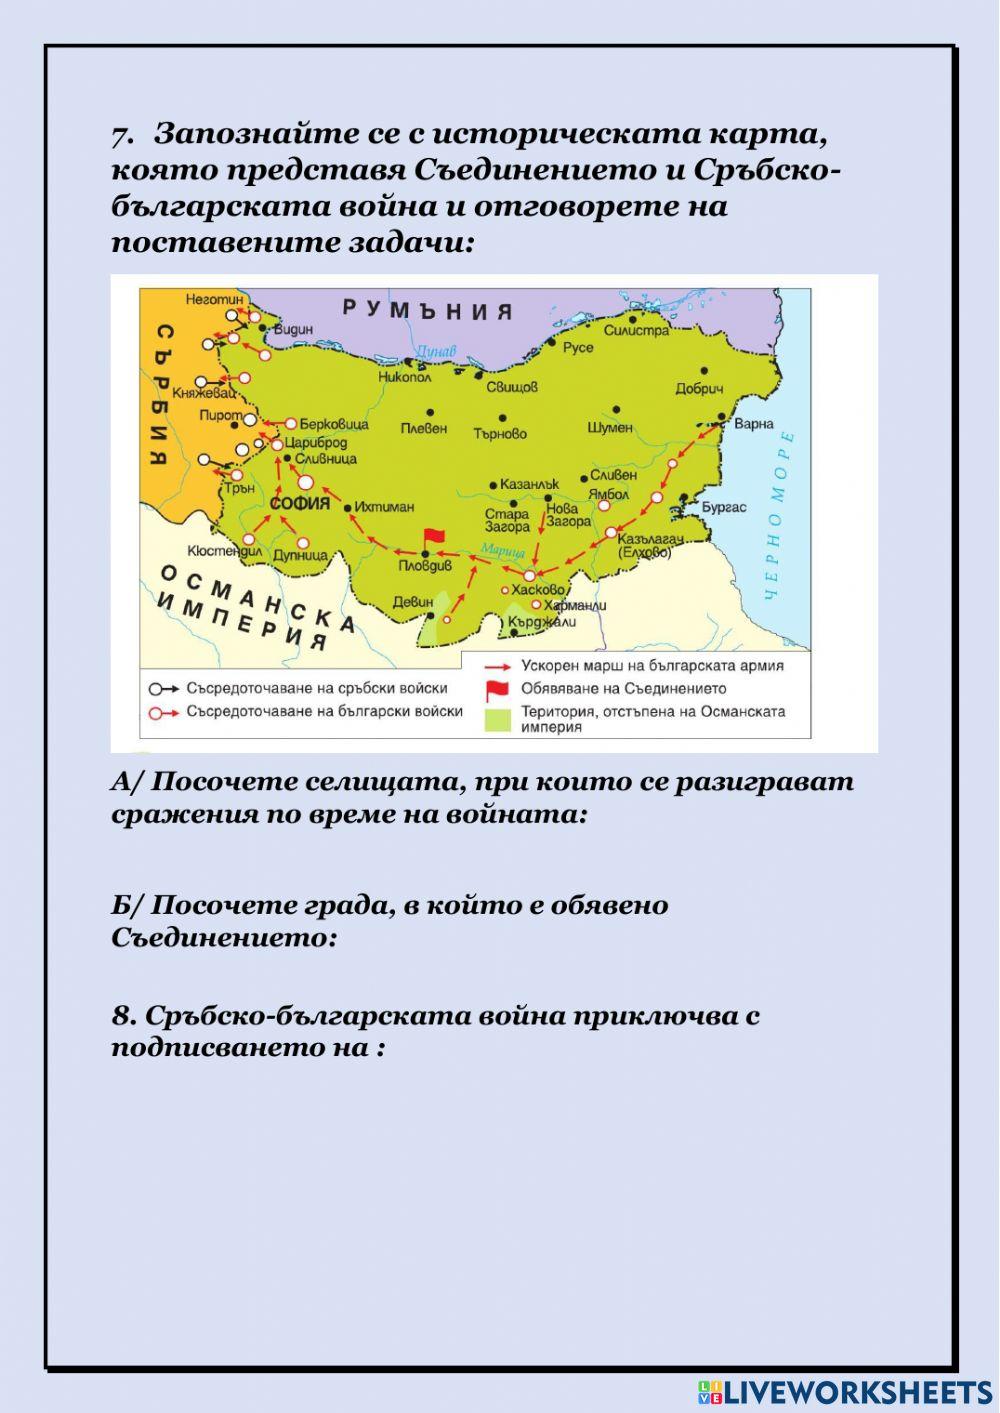 Съединението на Княжество България и Източна Румелия